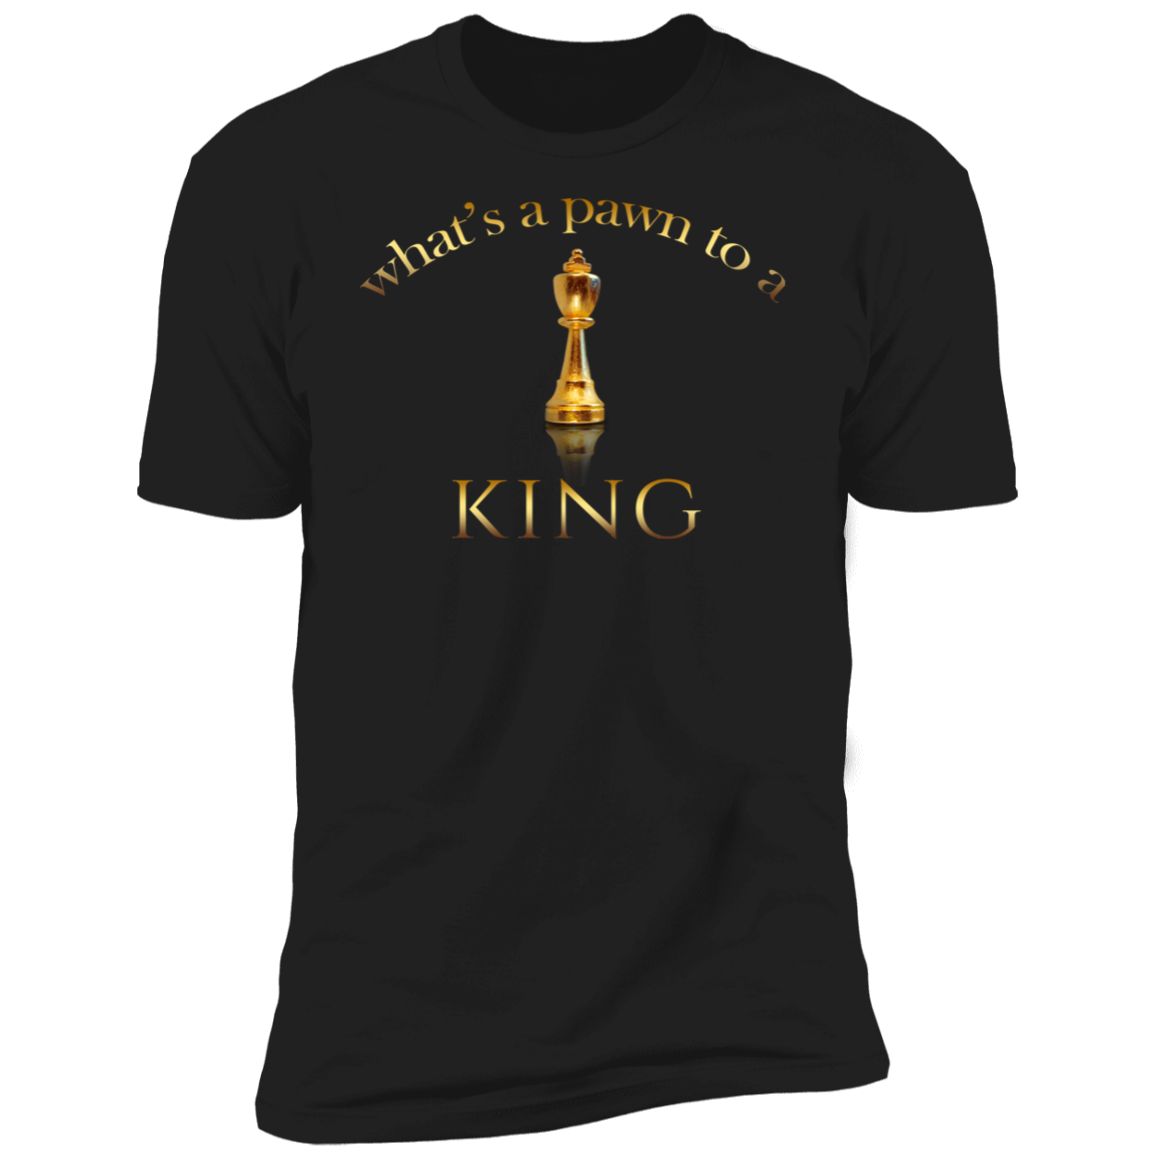 STILL DOPE King T-Shirt